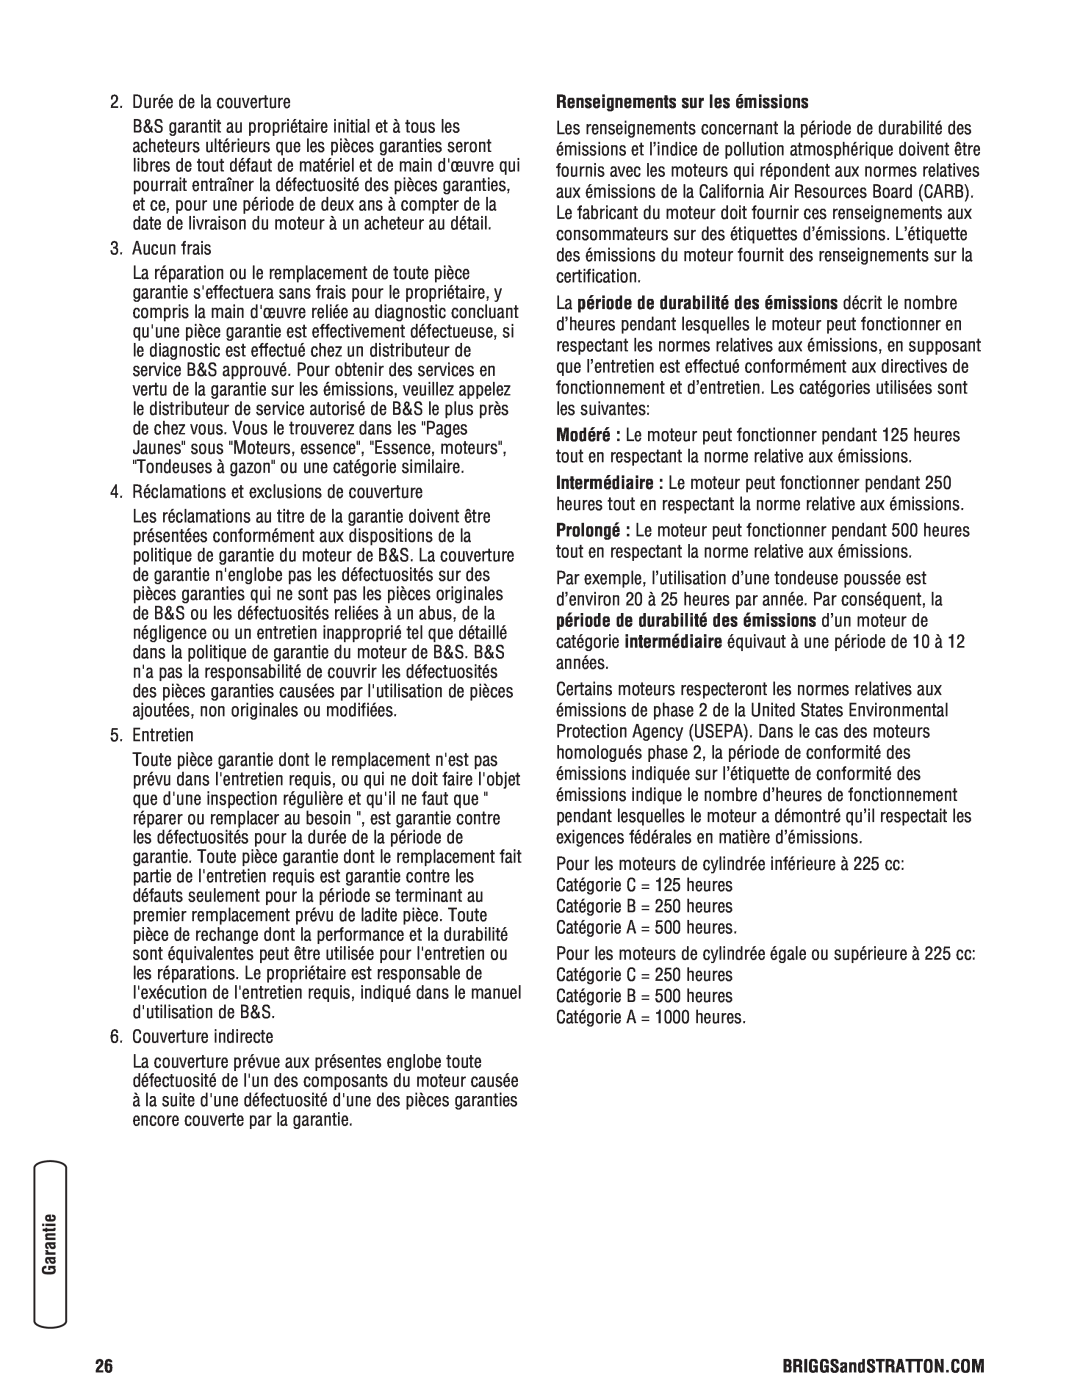 Briggs & Stratton 2900 PSI manual Renseignements sur les émissions 